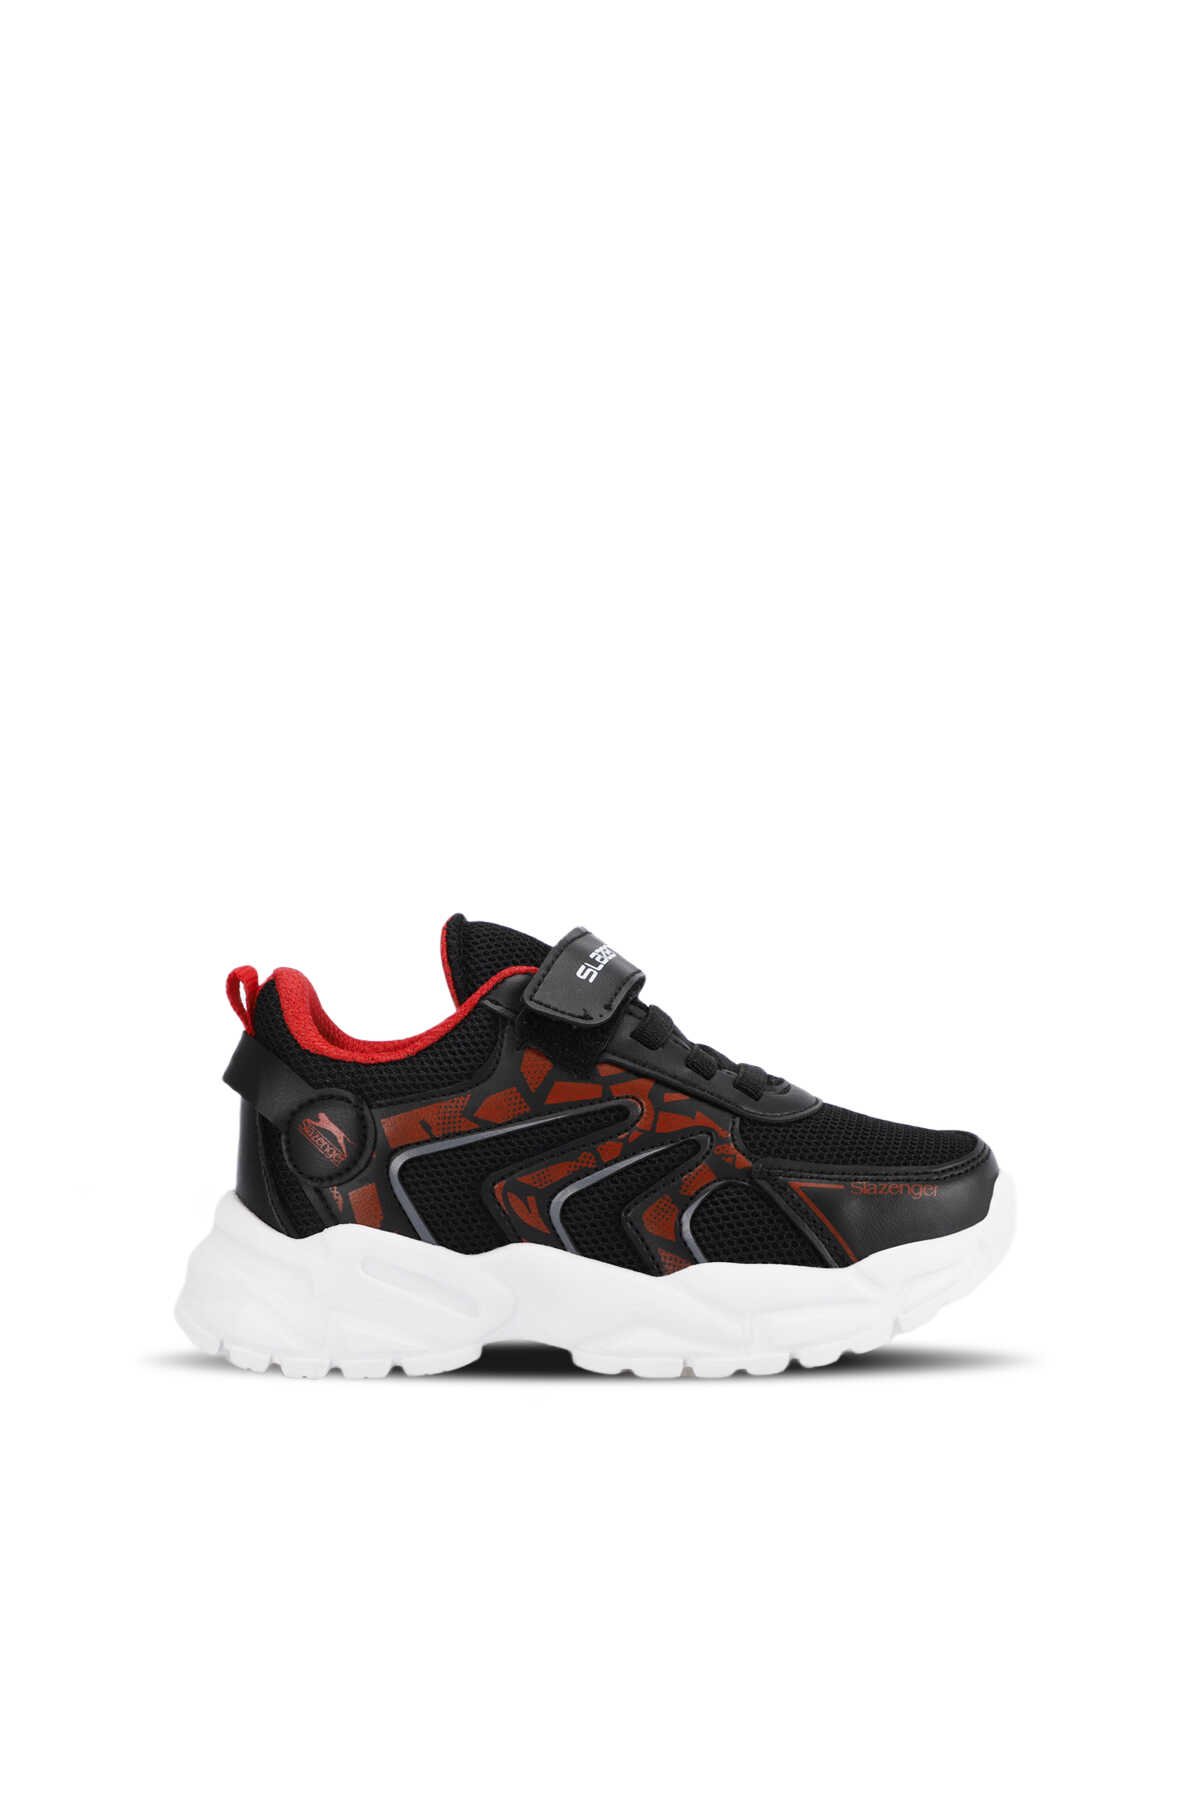 Slazenger - Slazenger KANNER Sneaker Erkek Çocuk Ayakkabı Siyah / Kırmızı